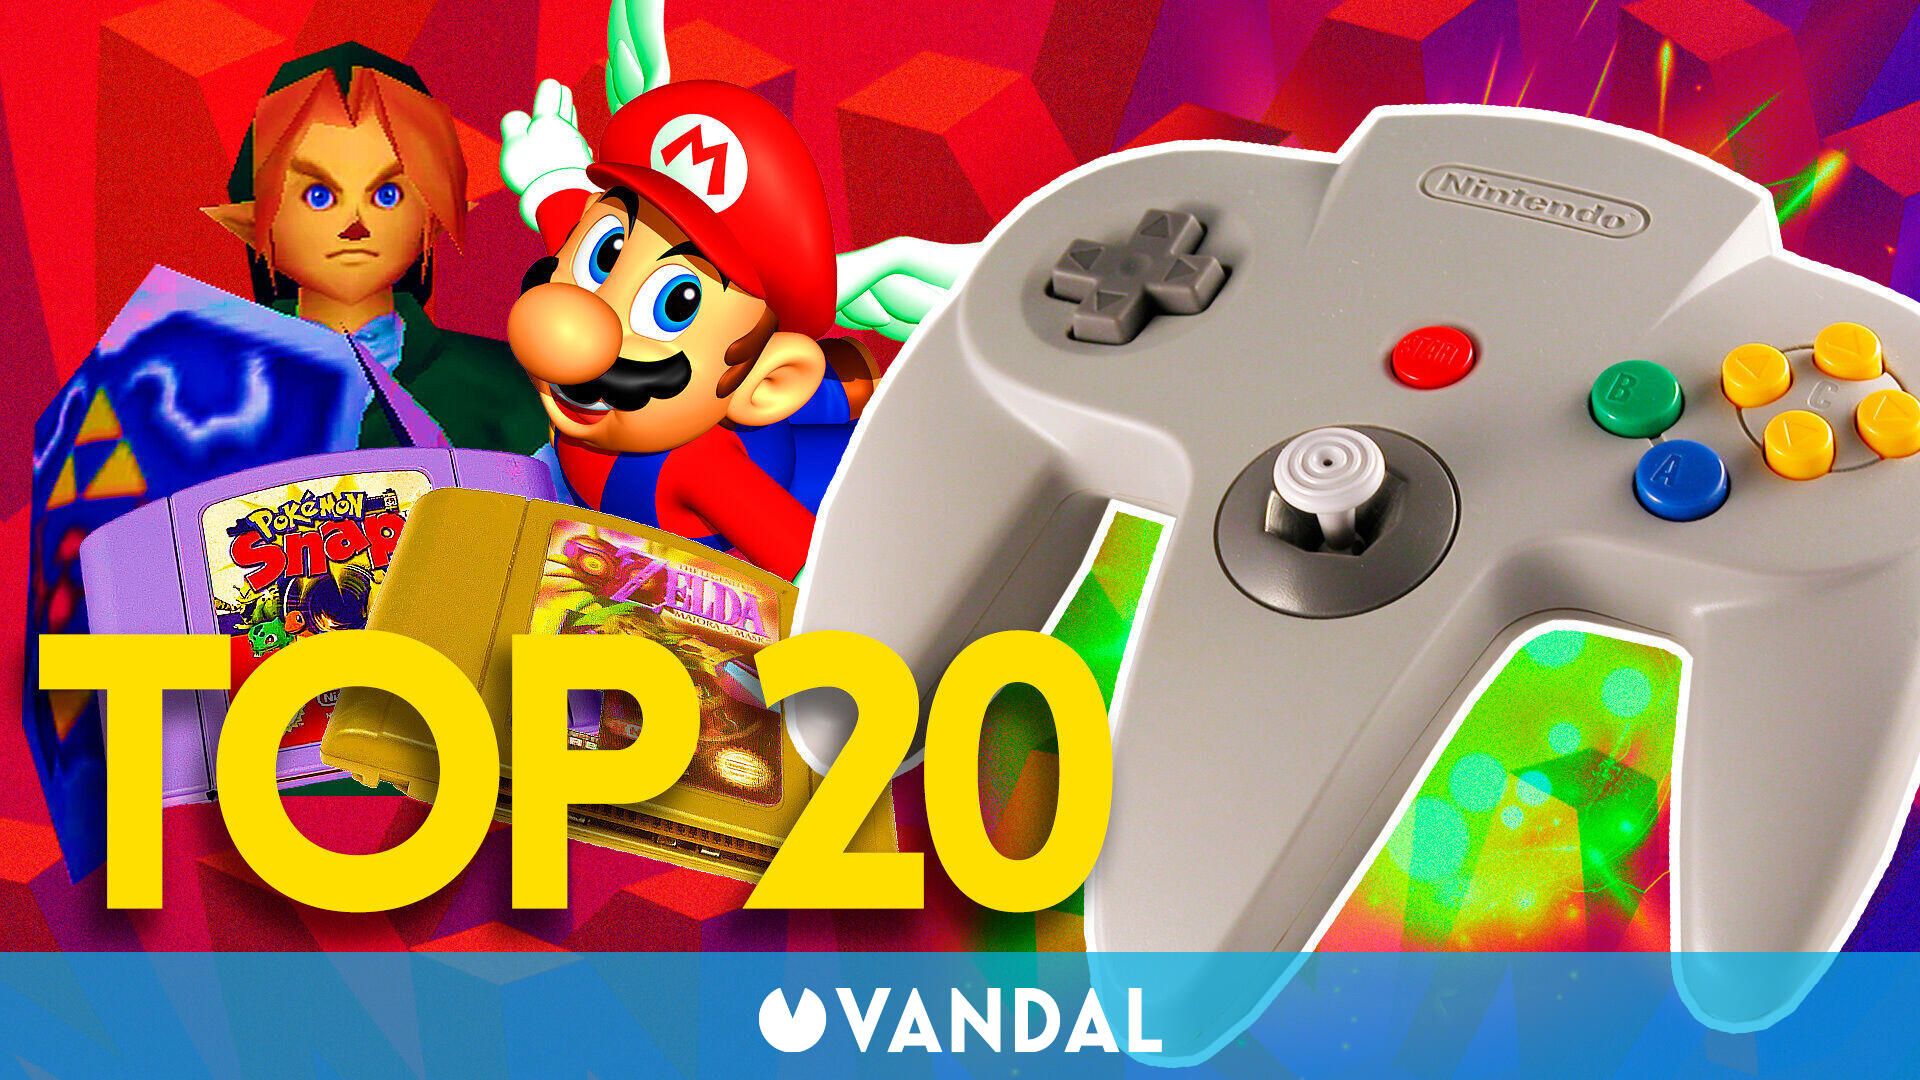 en los 20 de Nintendo 64 - Vandal